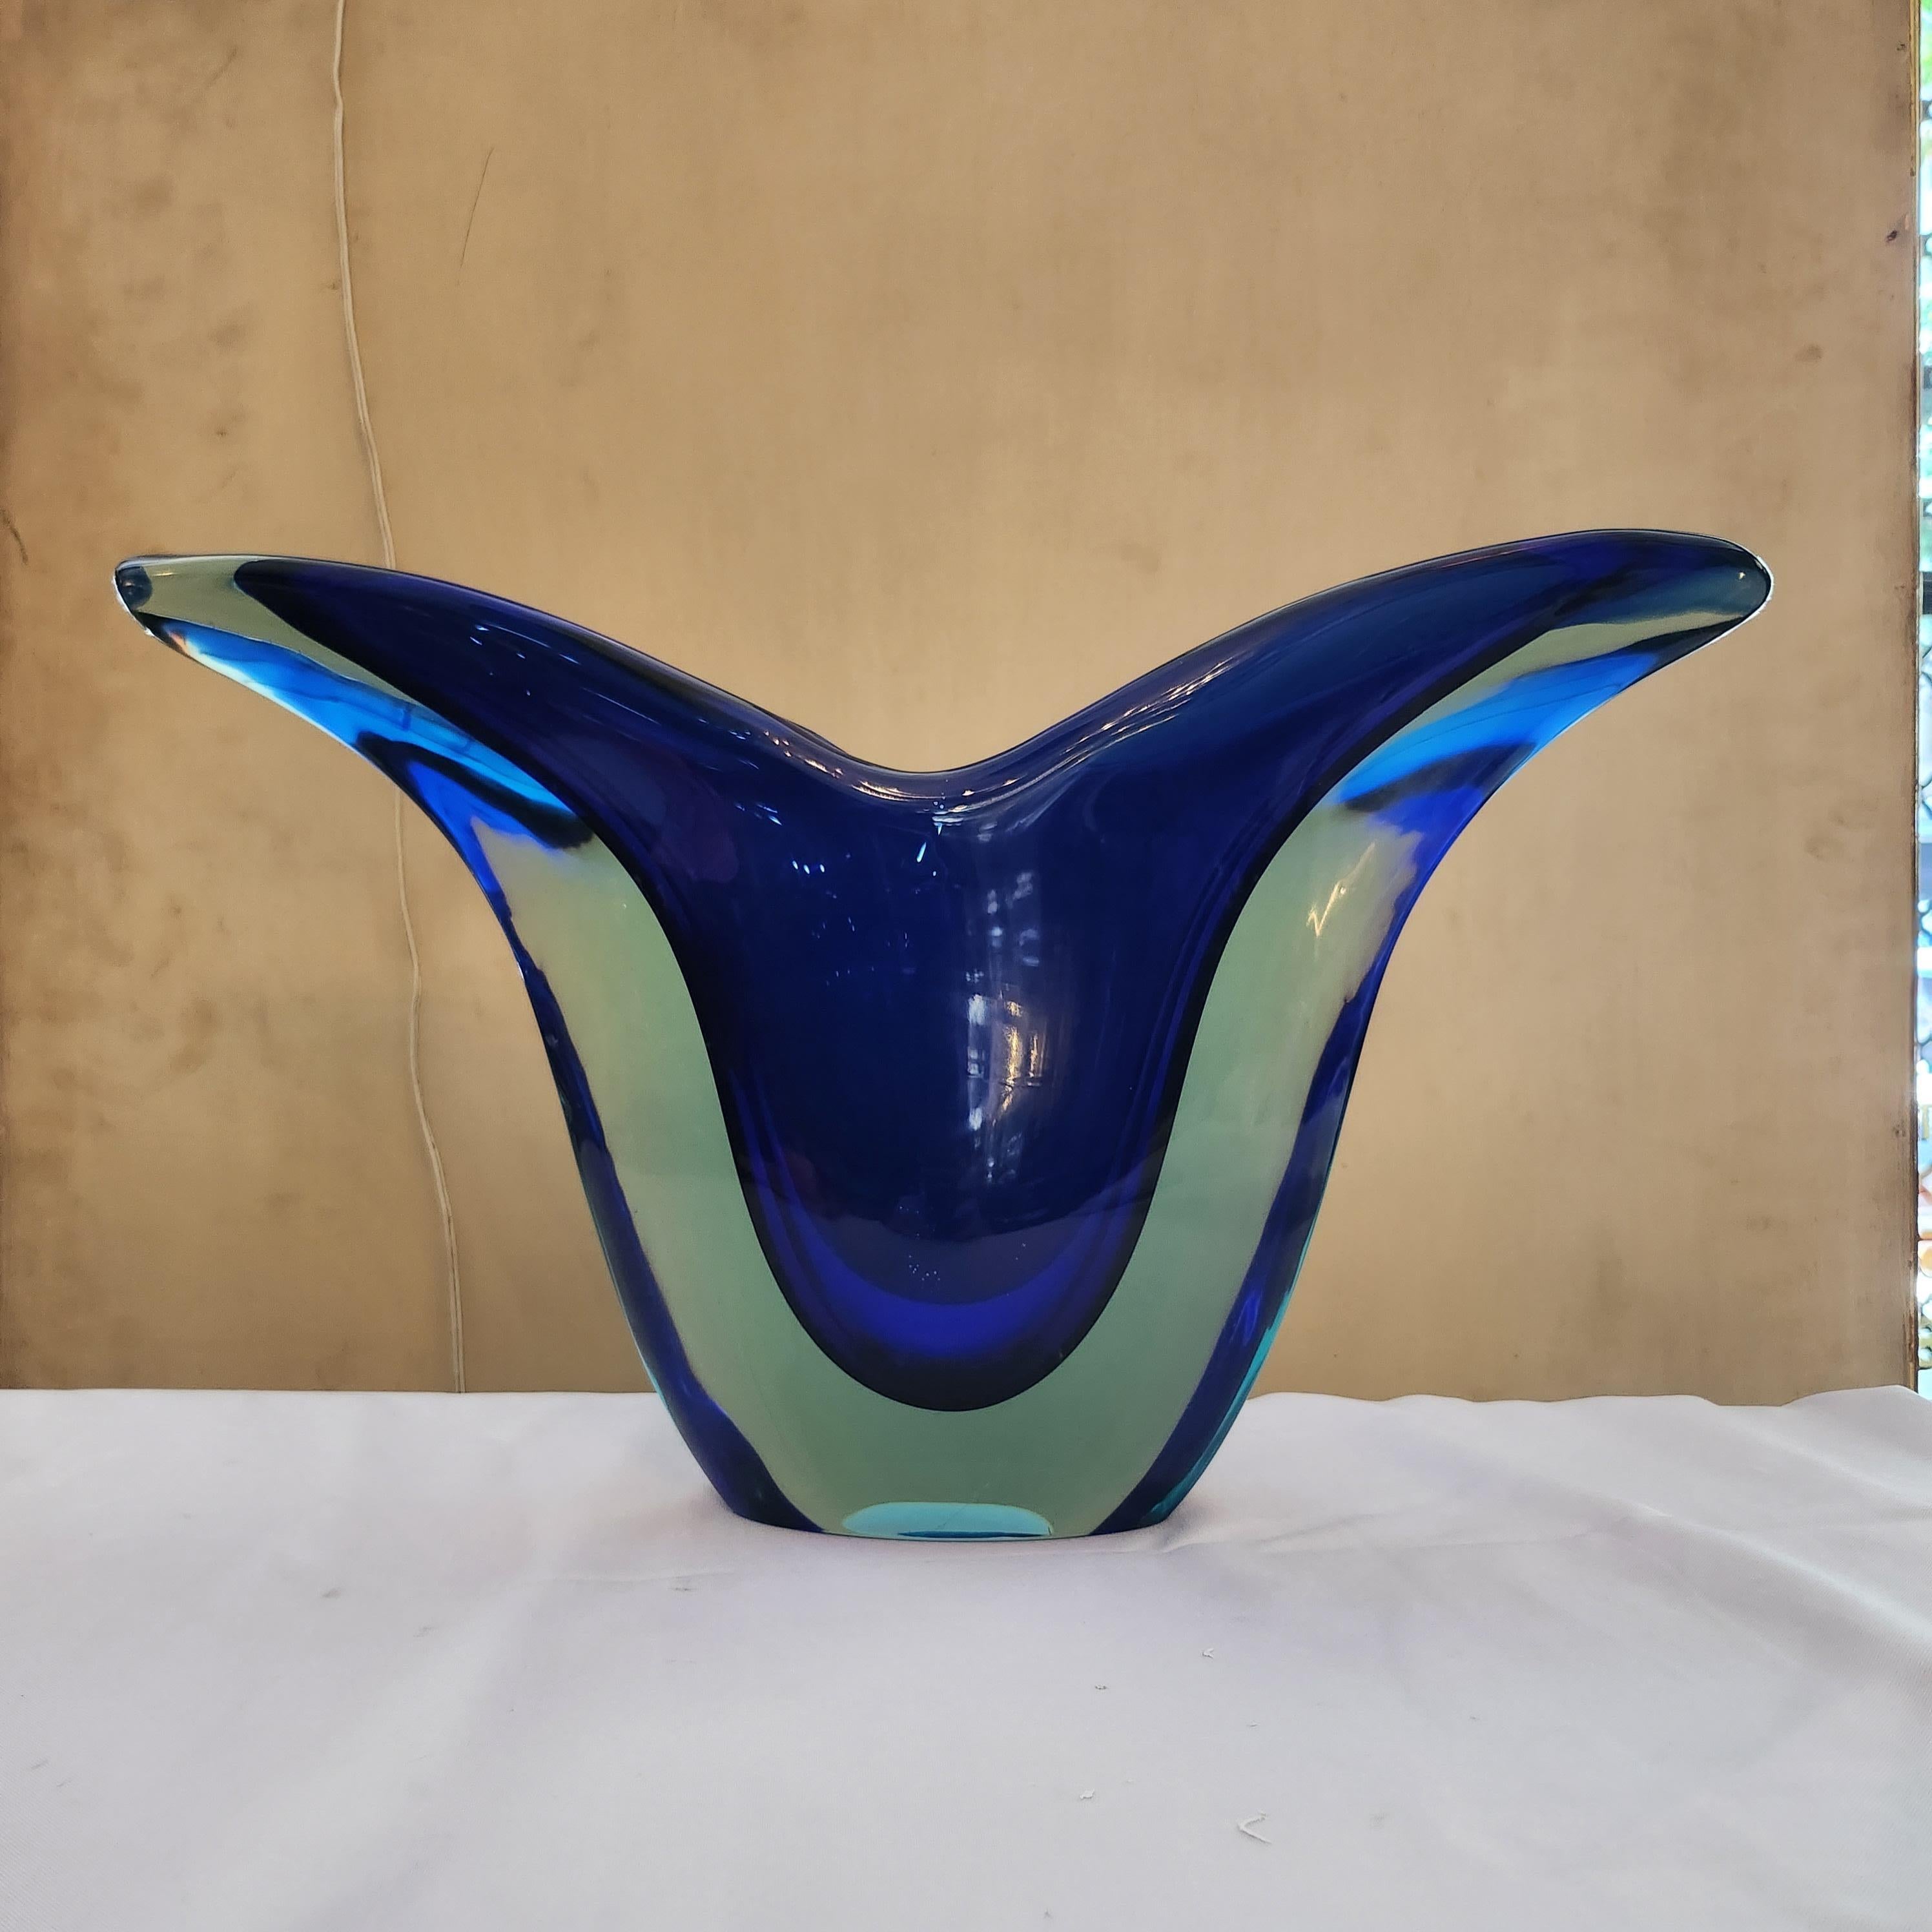 Diese Sommerso-Glasvase von Flavio Poli aus der pulsierenden Ära der 1970er Jahre strahlt eine zeitlose Eleganz und Raffinesse aus. Die auffällige V-Form lässt tiefblaue Farbtöne und transparentes Glas nahtlos ineinander übergehen und erzeugt einen